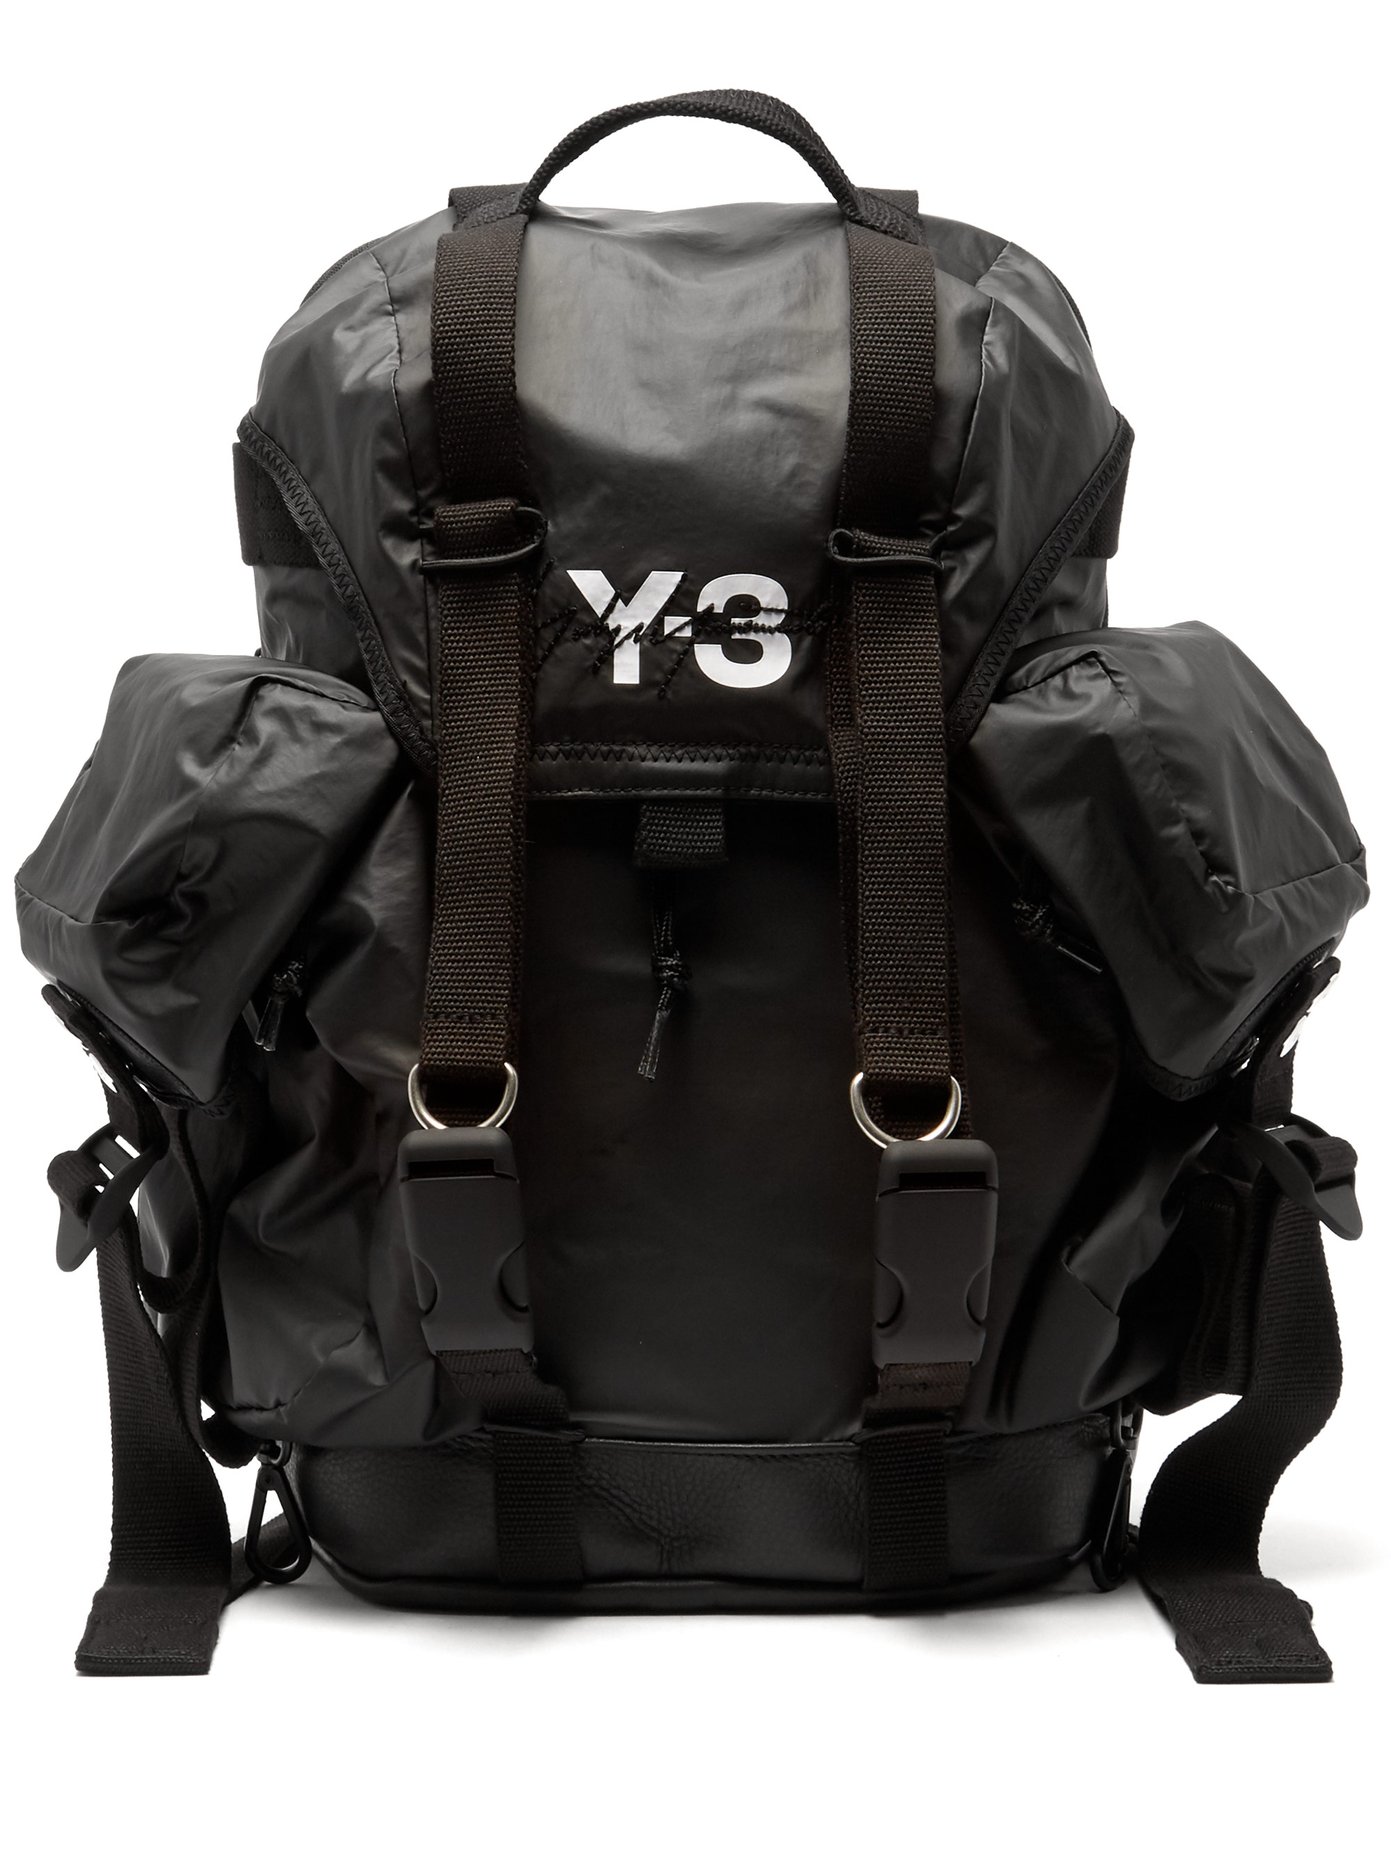 y3 utility bag